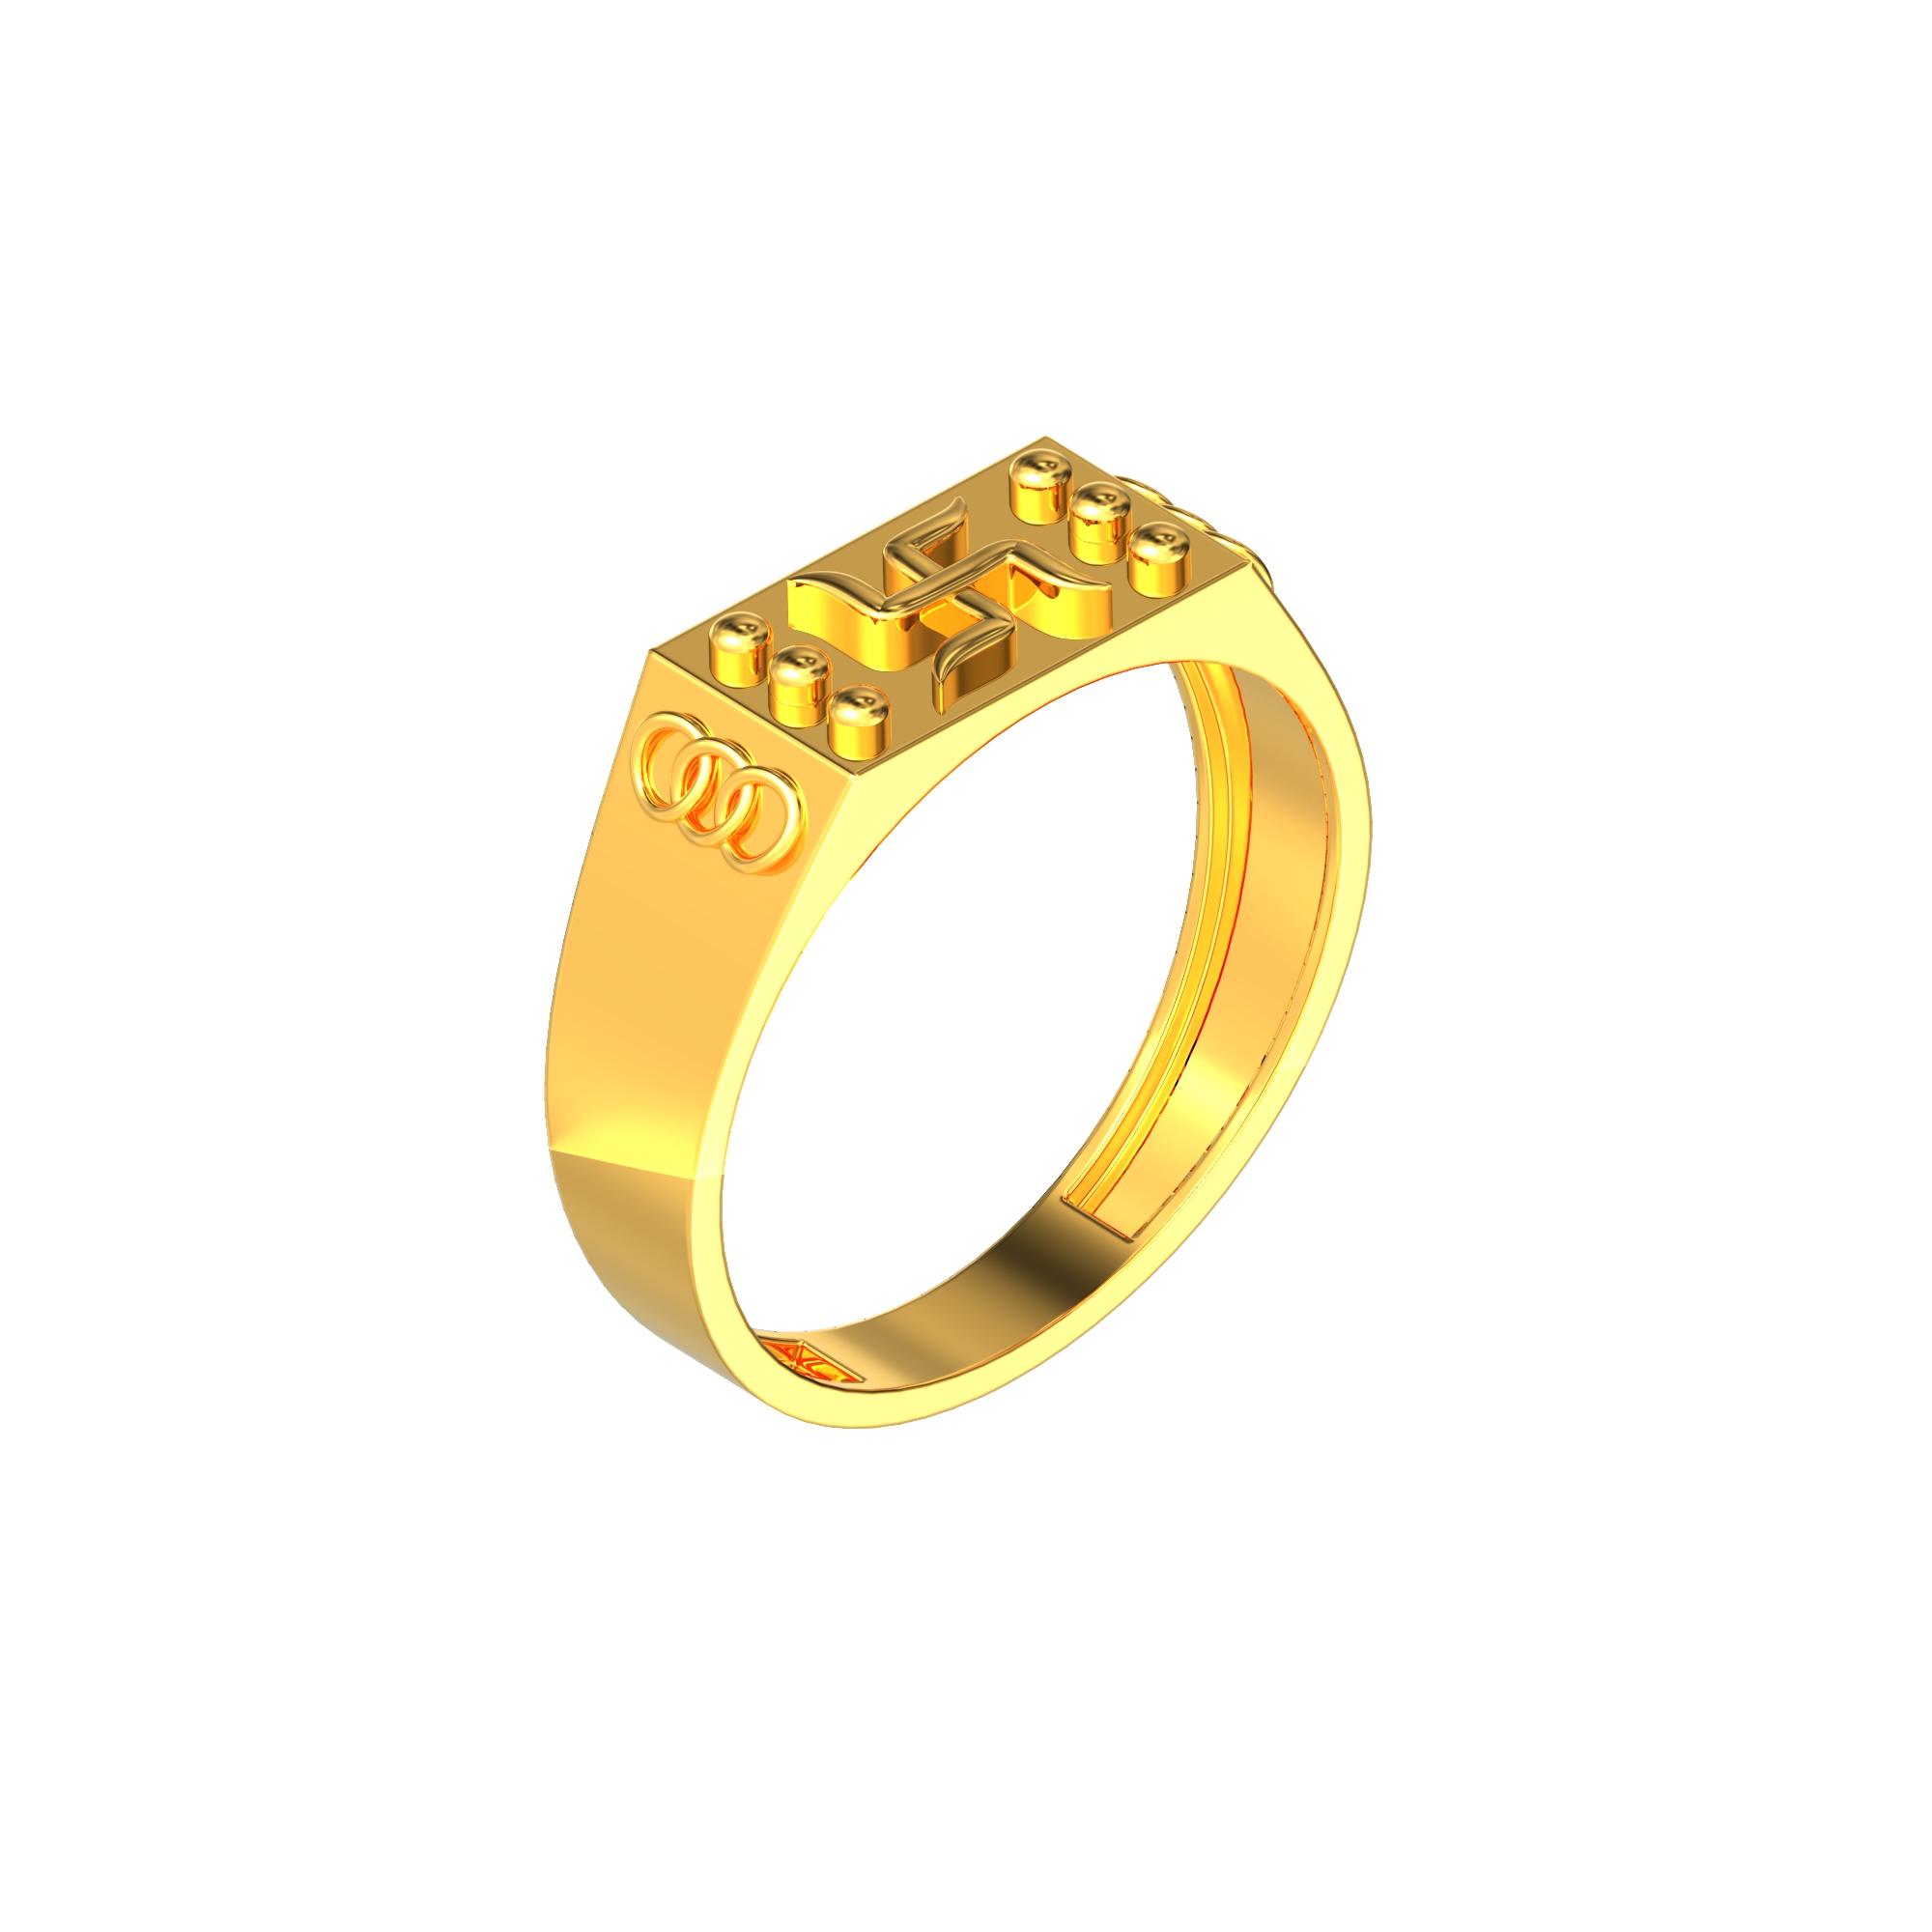 Devotional Swathik Gold ring